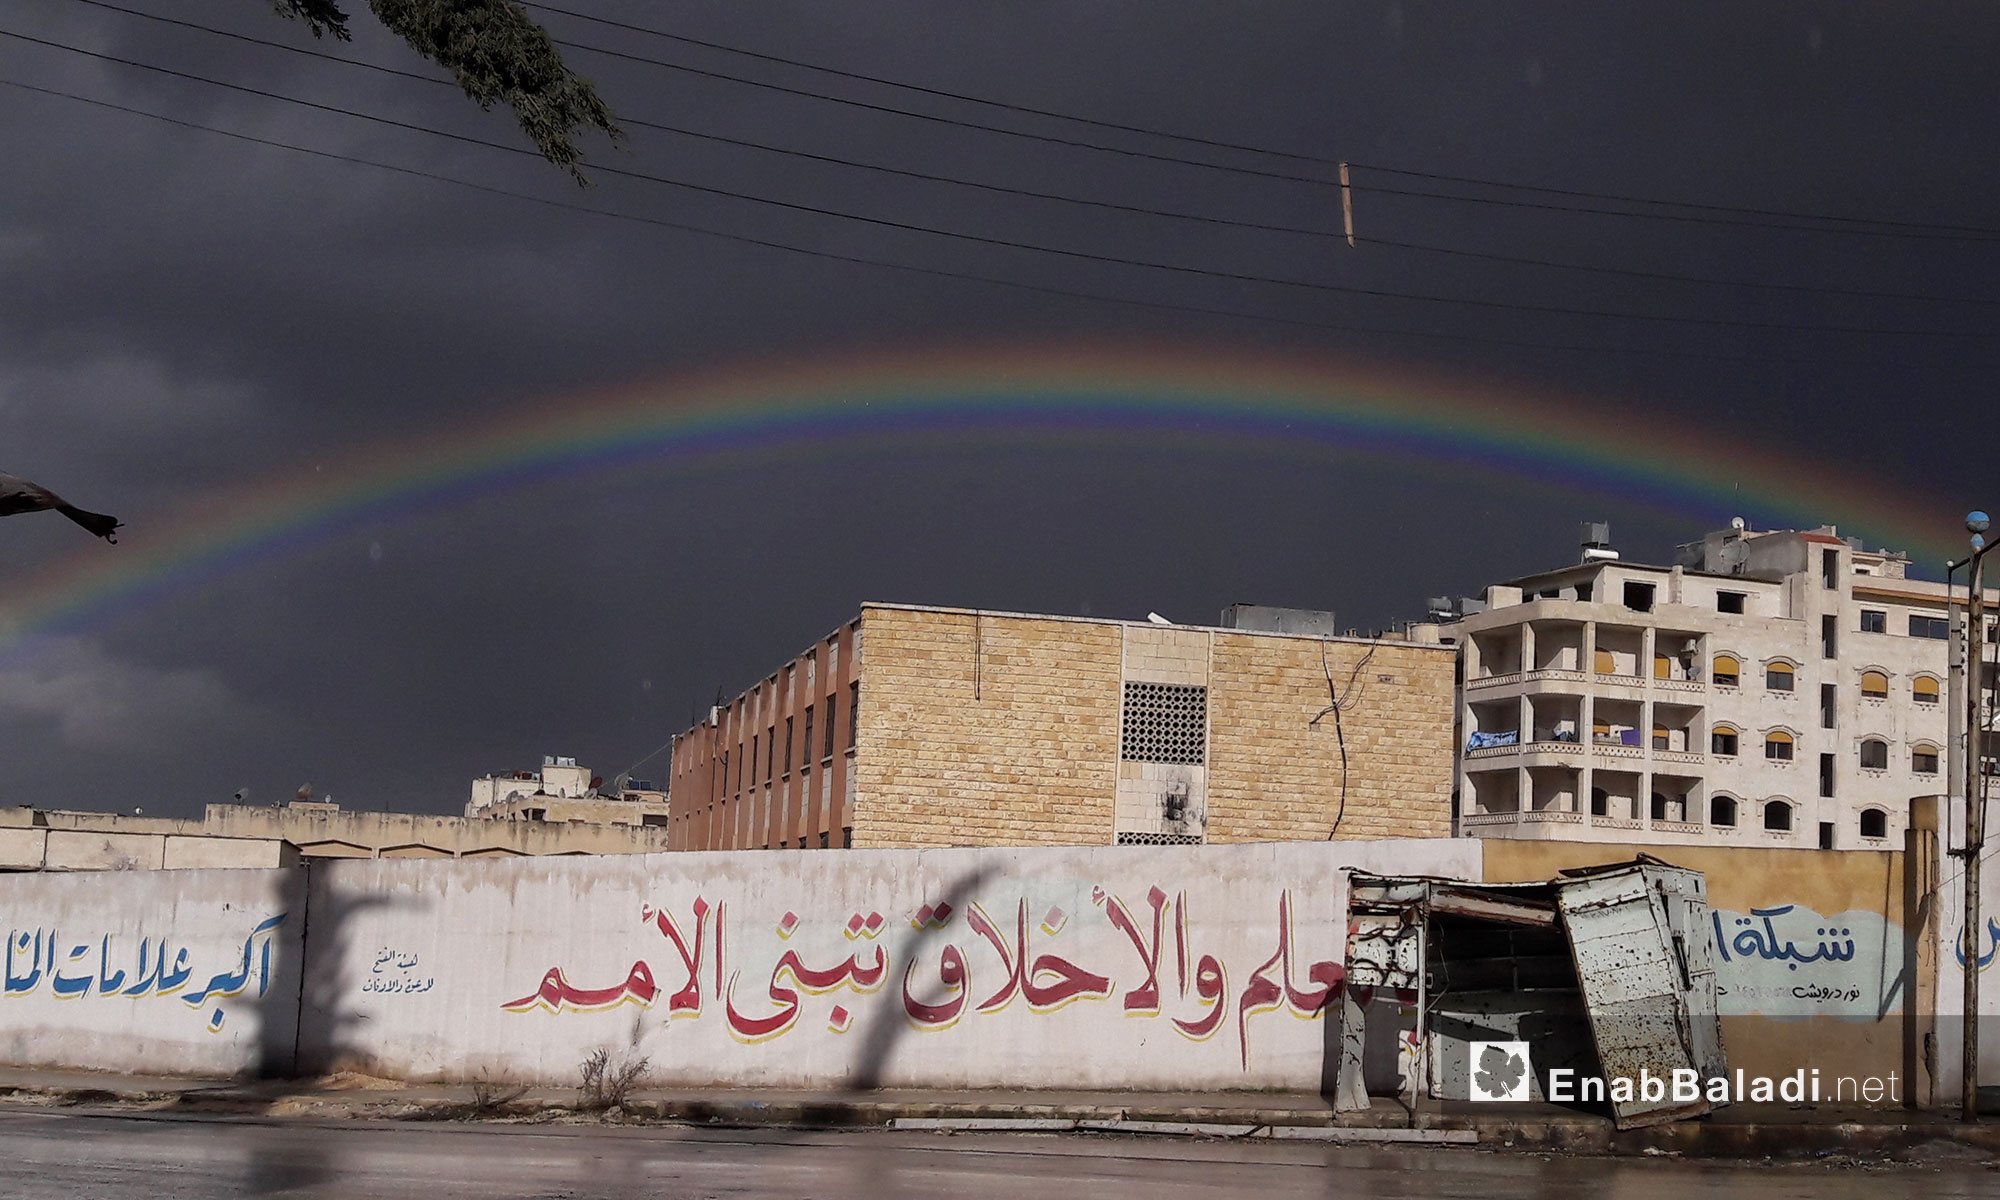 قوس قزح من مدينة إدلب - 8 كانون الثاني 2017 (عنب بلدي)